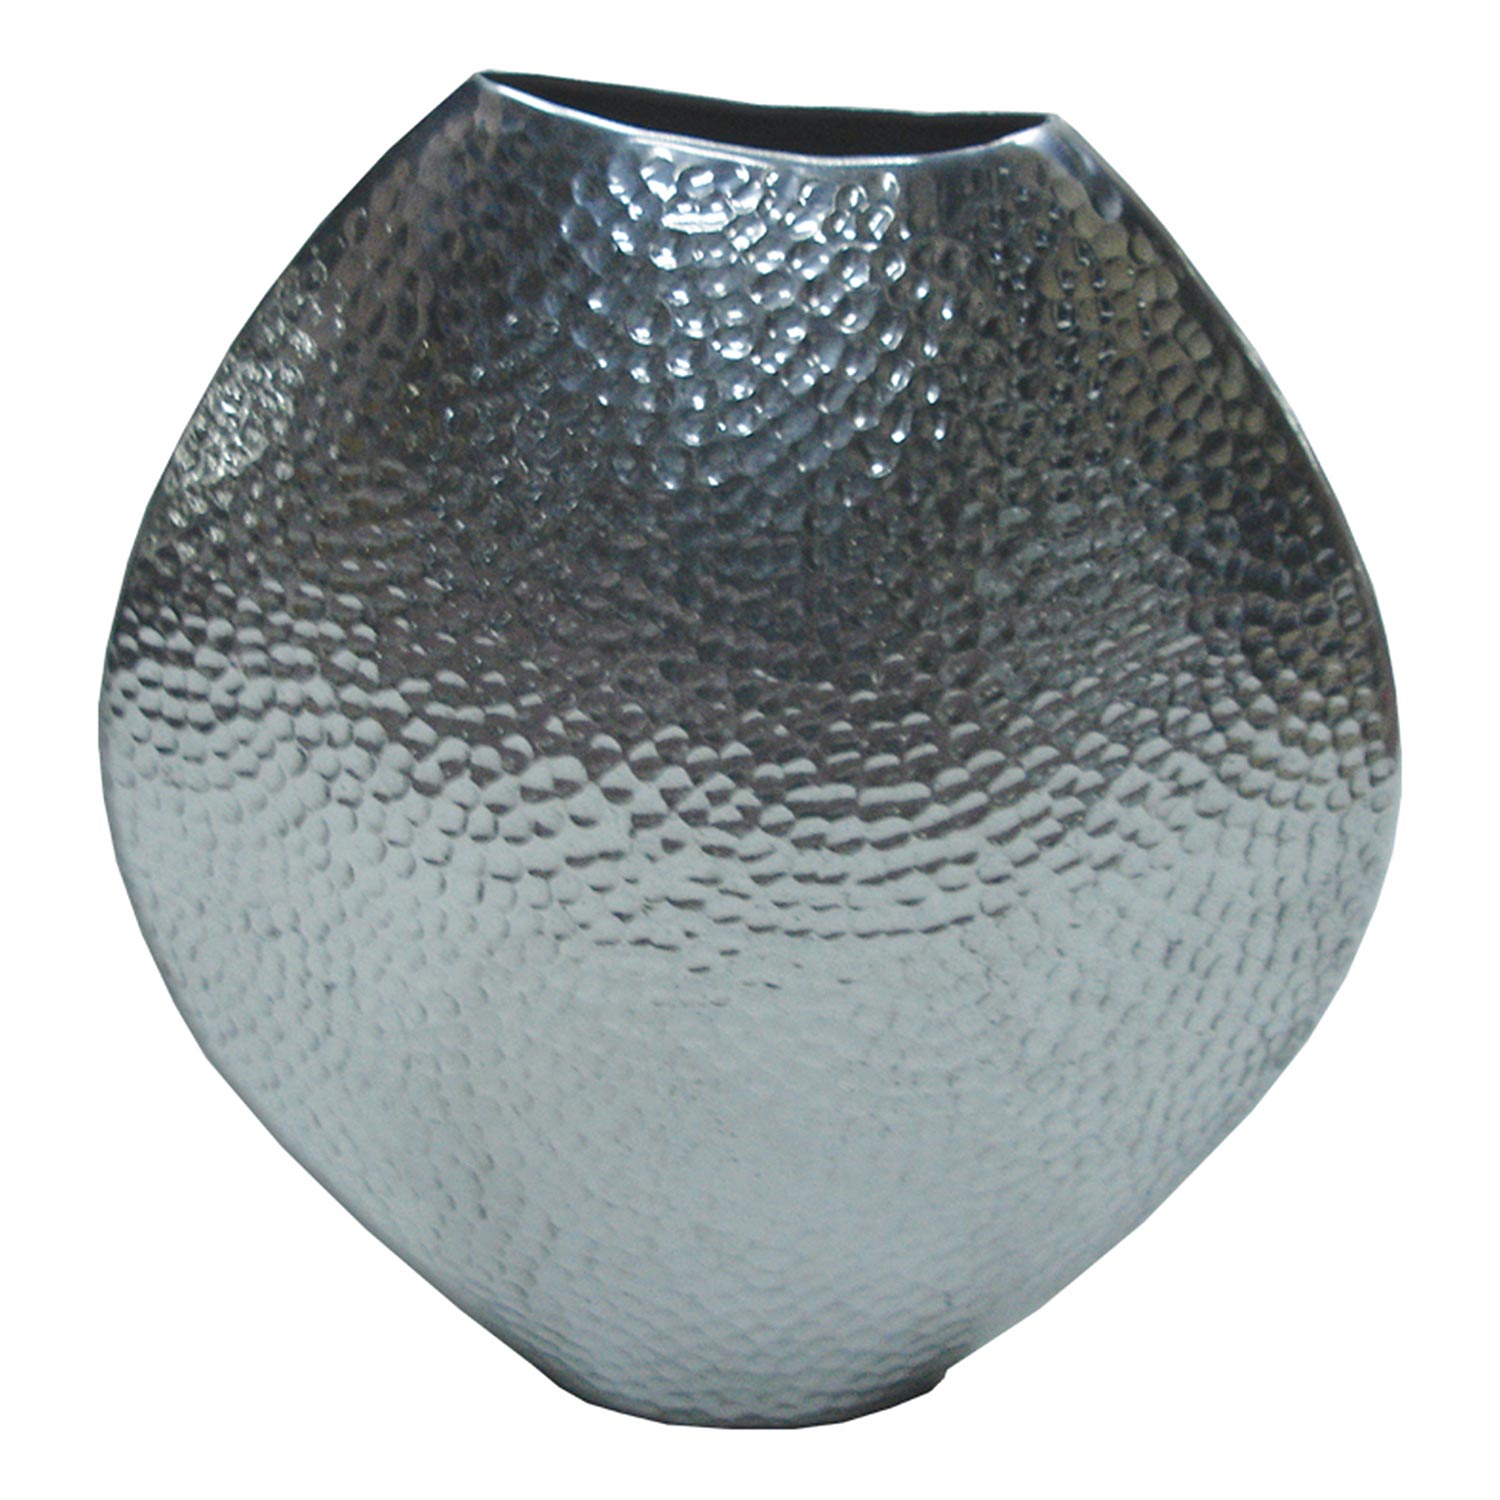 Ren-Wil Sahara Vase - Chrome